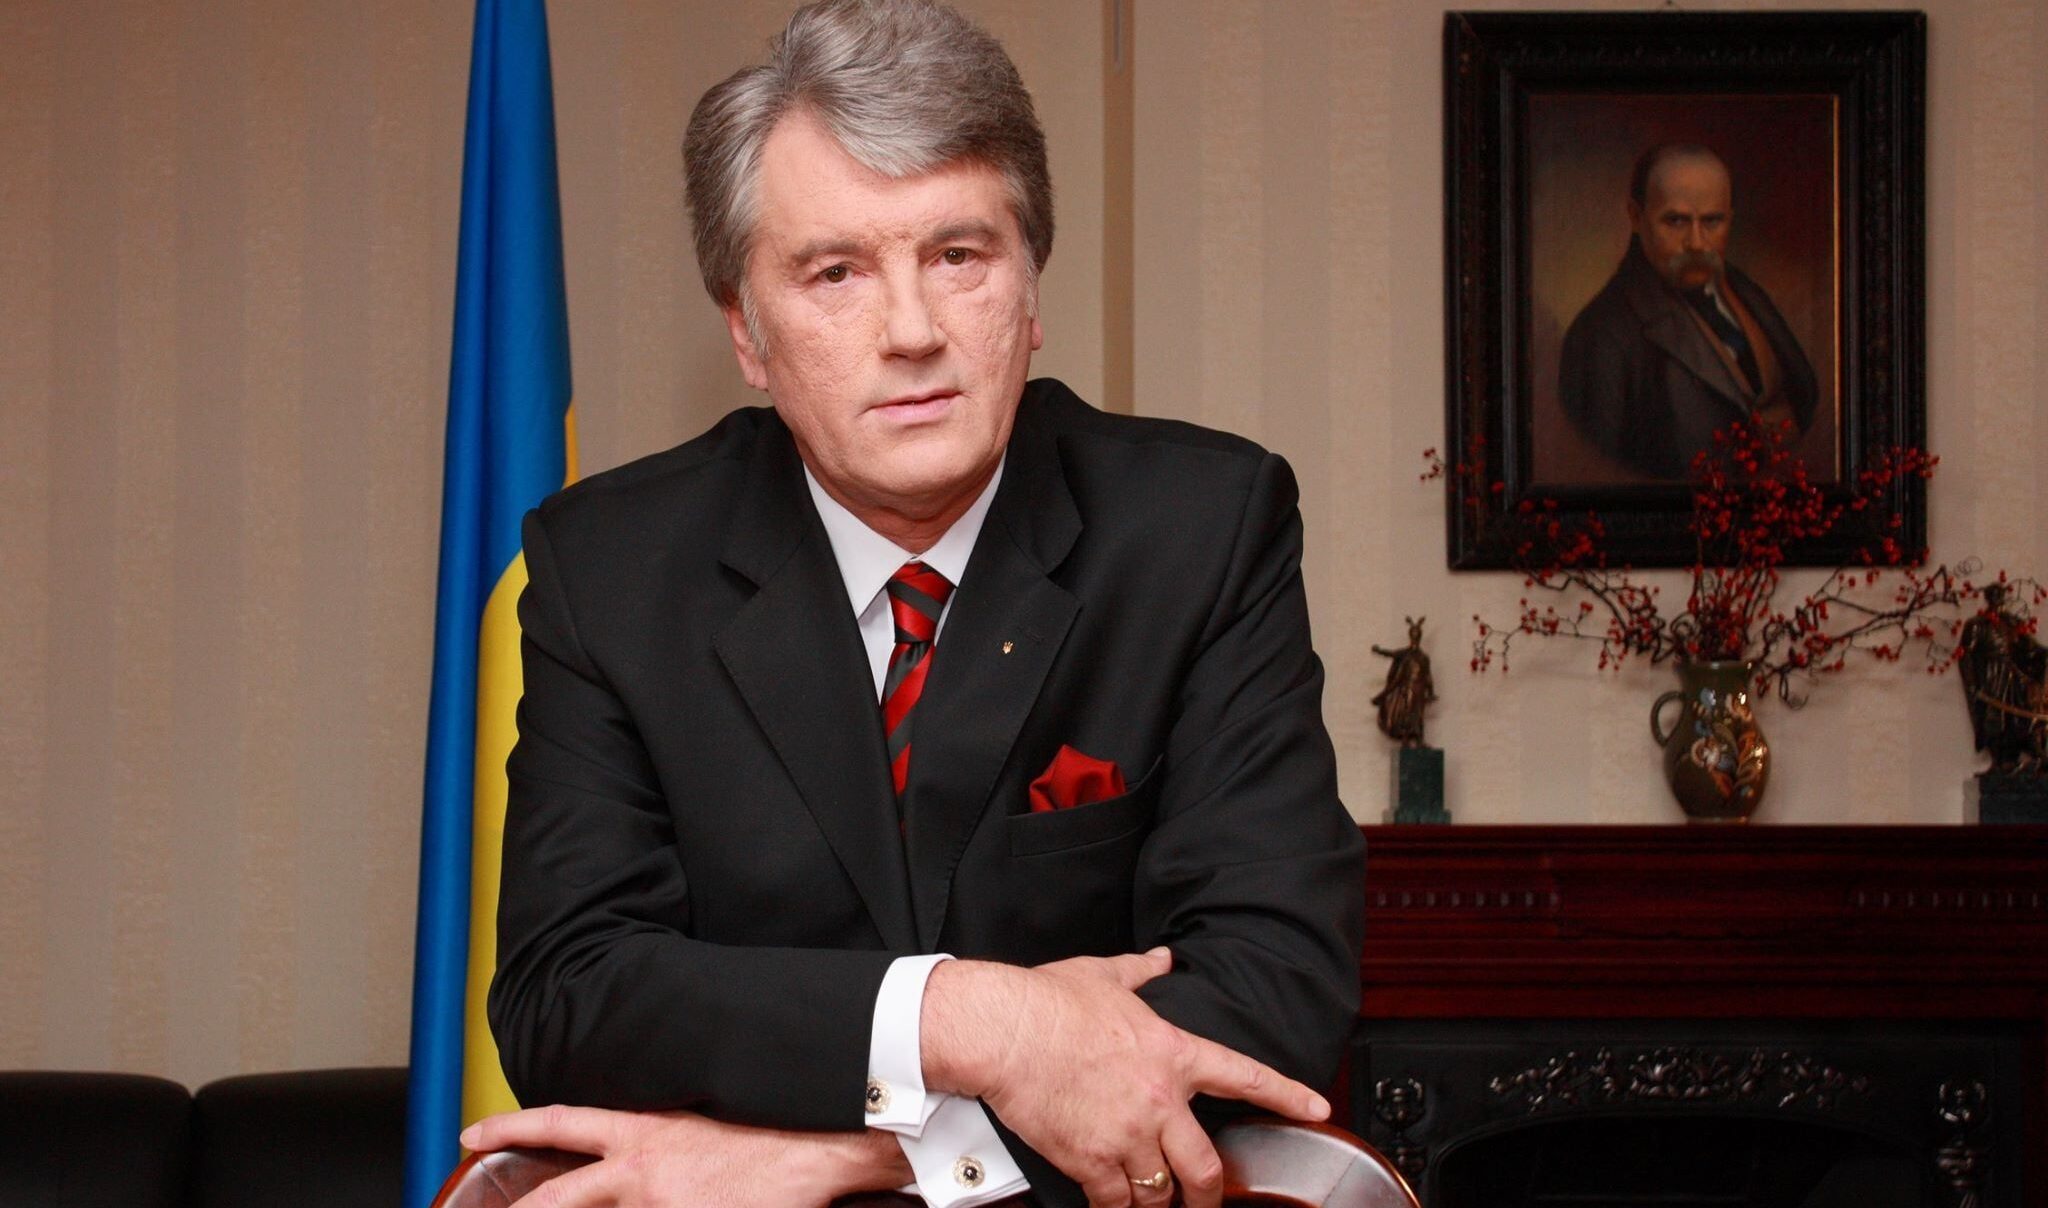 Віктор Ющенко вже має п'ятьох онуків